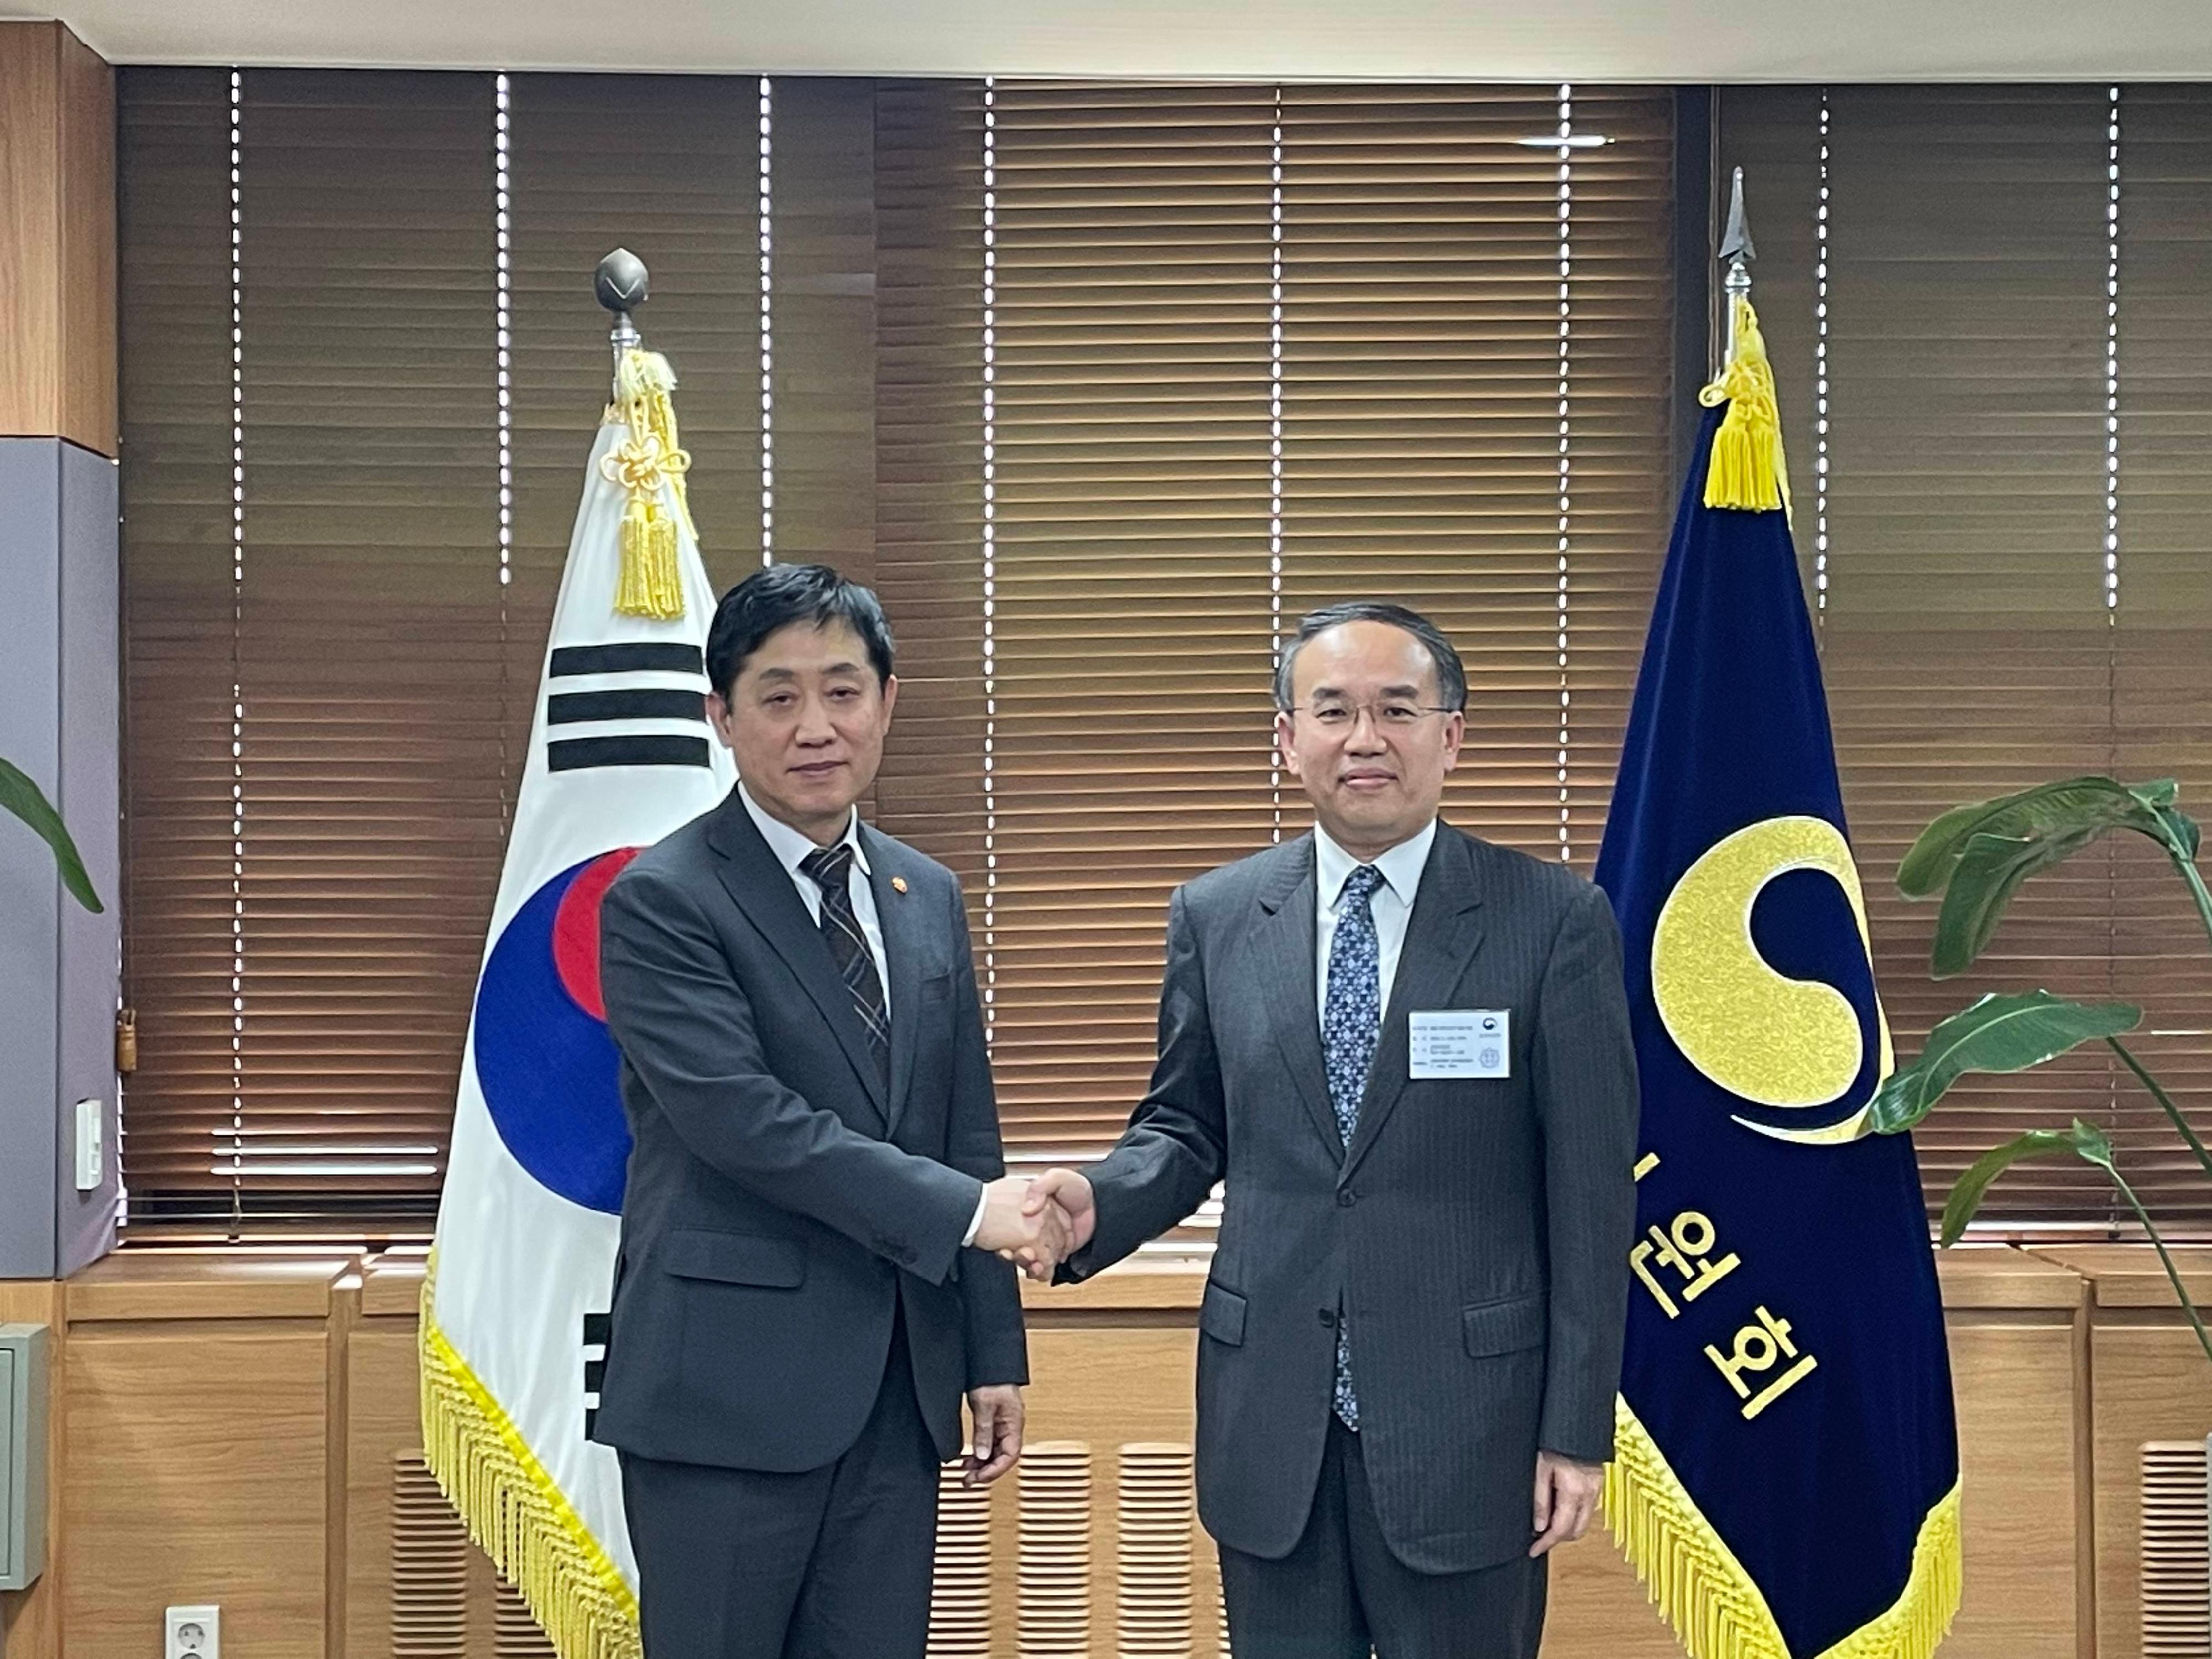 財經事務及庫務局局長許正宇今日（五月四日）繼續在韓國仁川的訪問行程。圖示許正宇（右）與韓國金融委員會委員長金周顯（左）會面。



